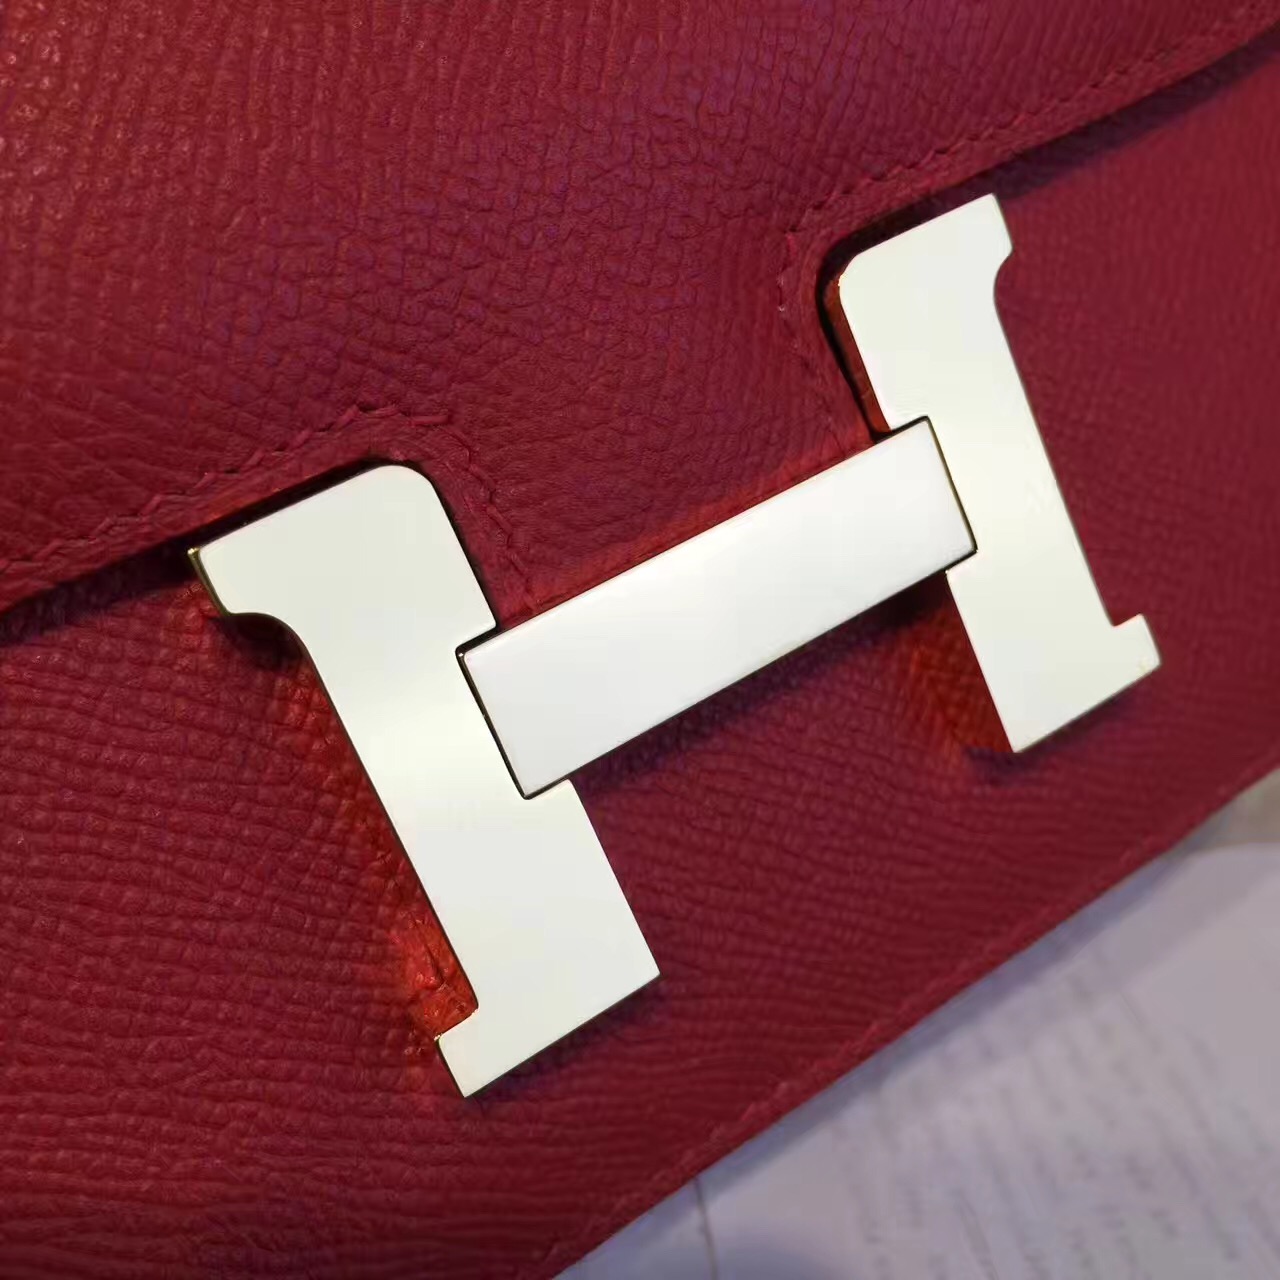 Hermes original epsom leather constance bag C23 bordeaux